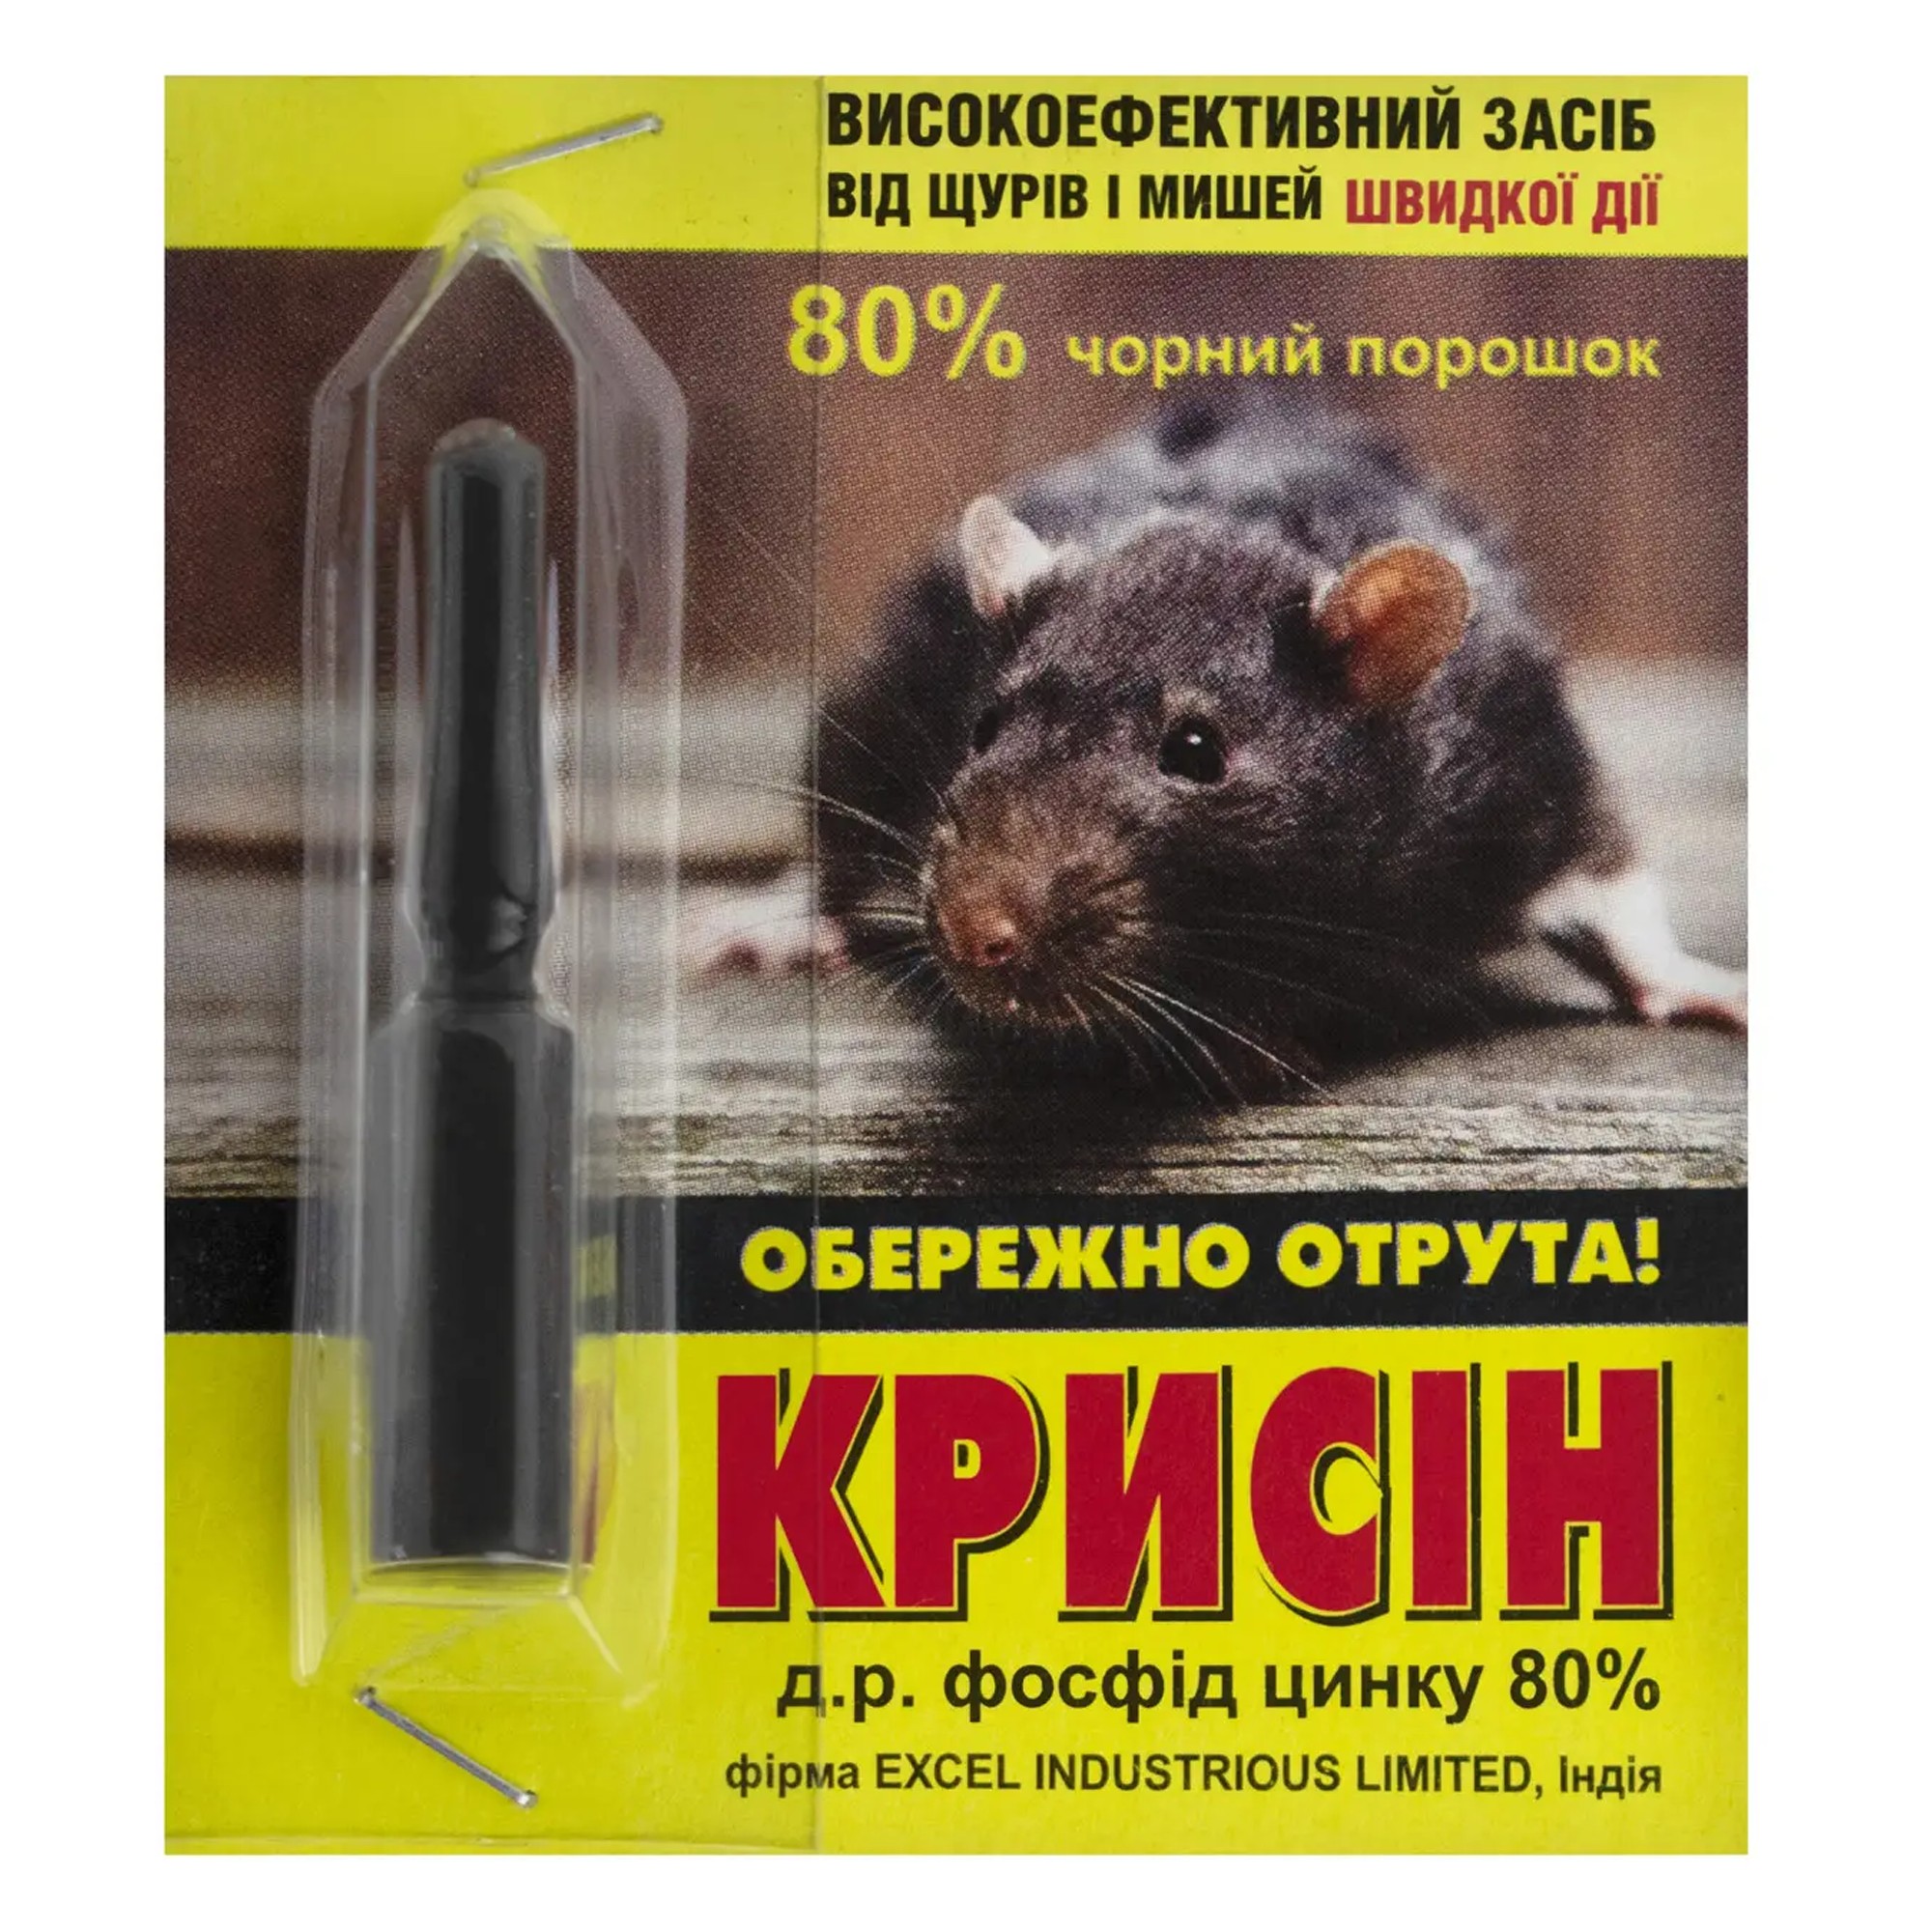 Москвич нашел в еде KFC жареных мышей